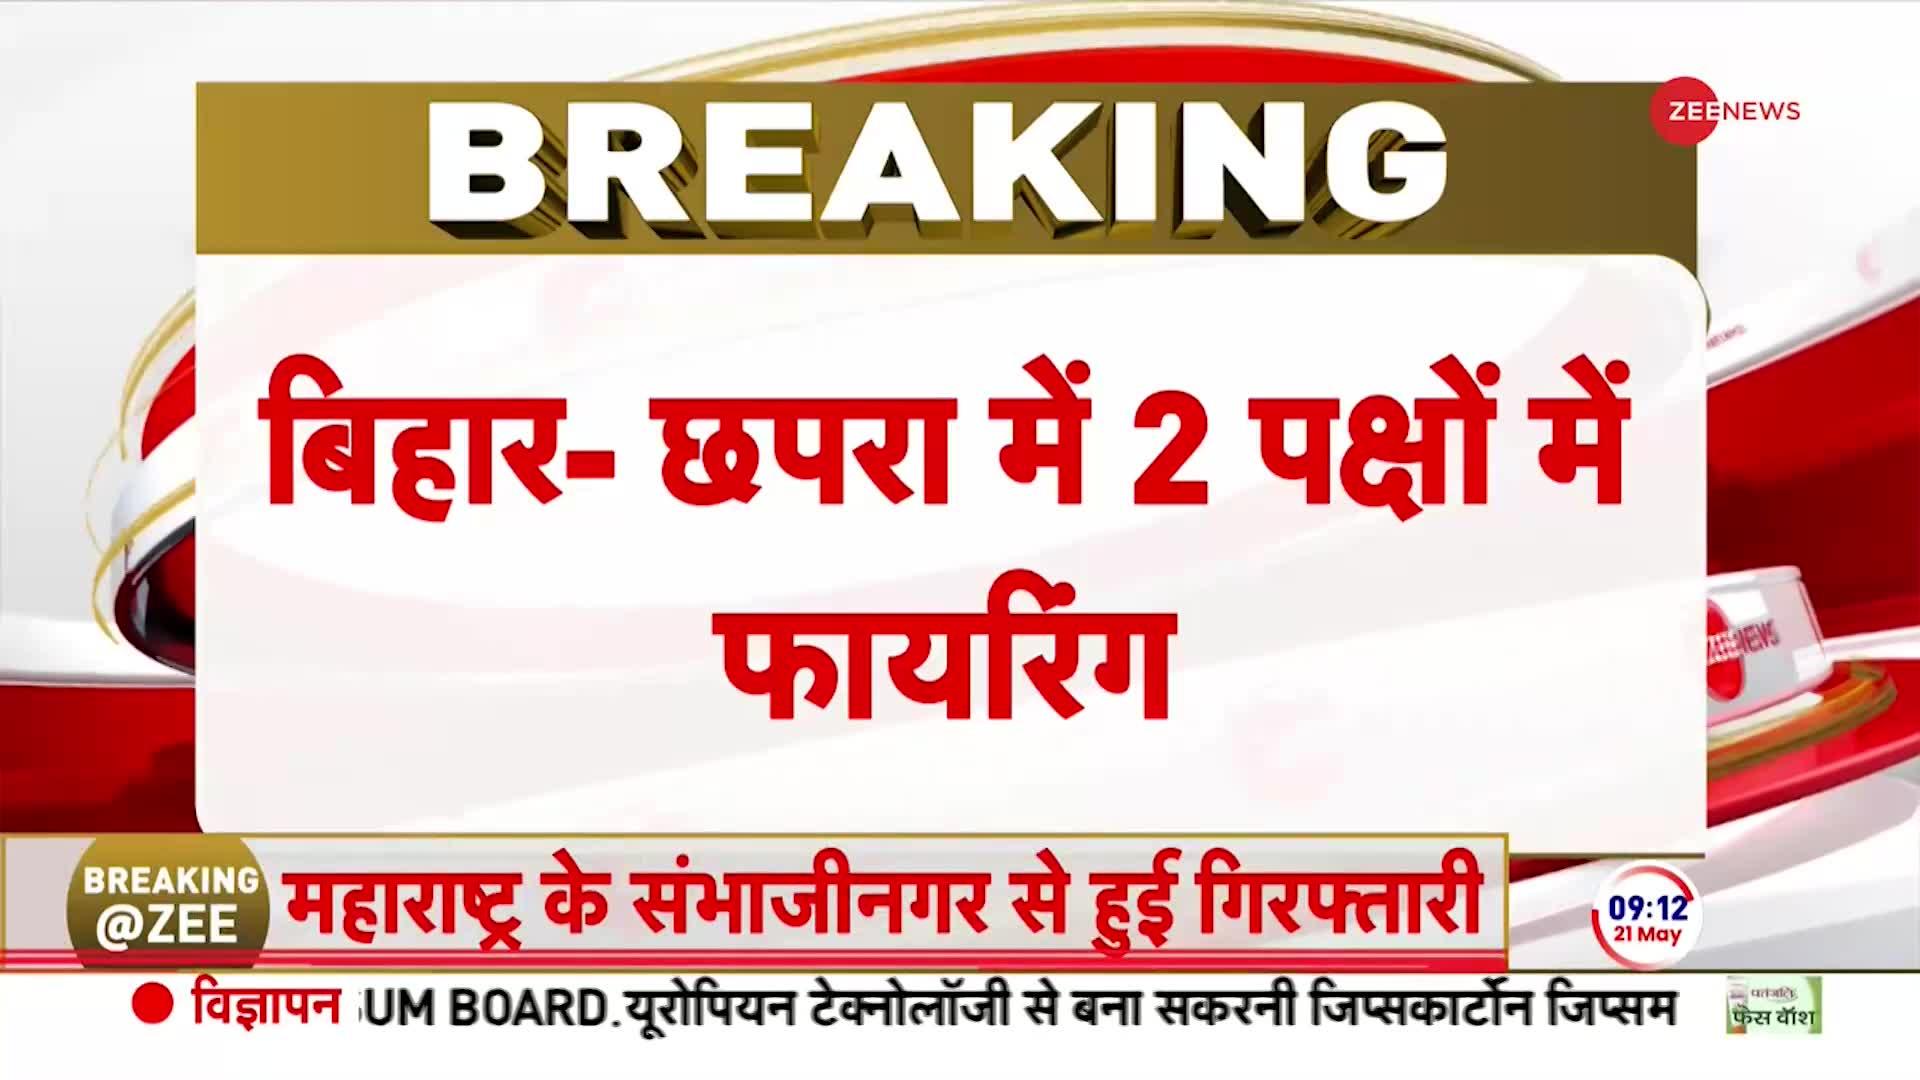 Breaking News: बिहार में कल मतदान के दौरान हुई झड़प में 1 की मौत 2 घायल